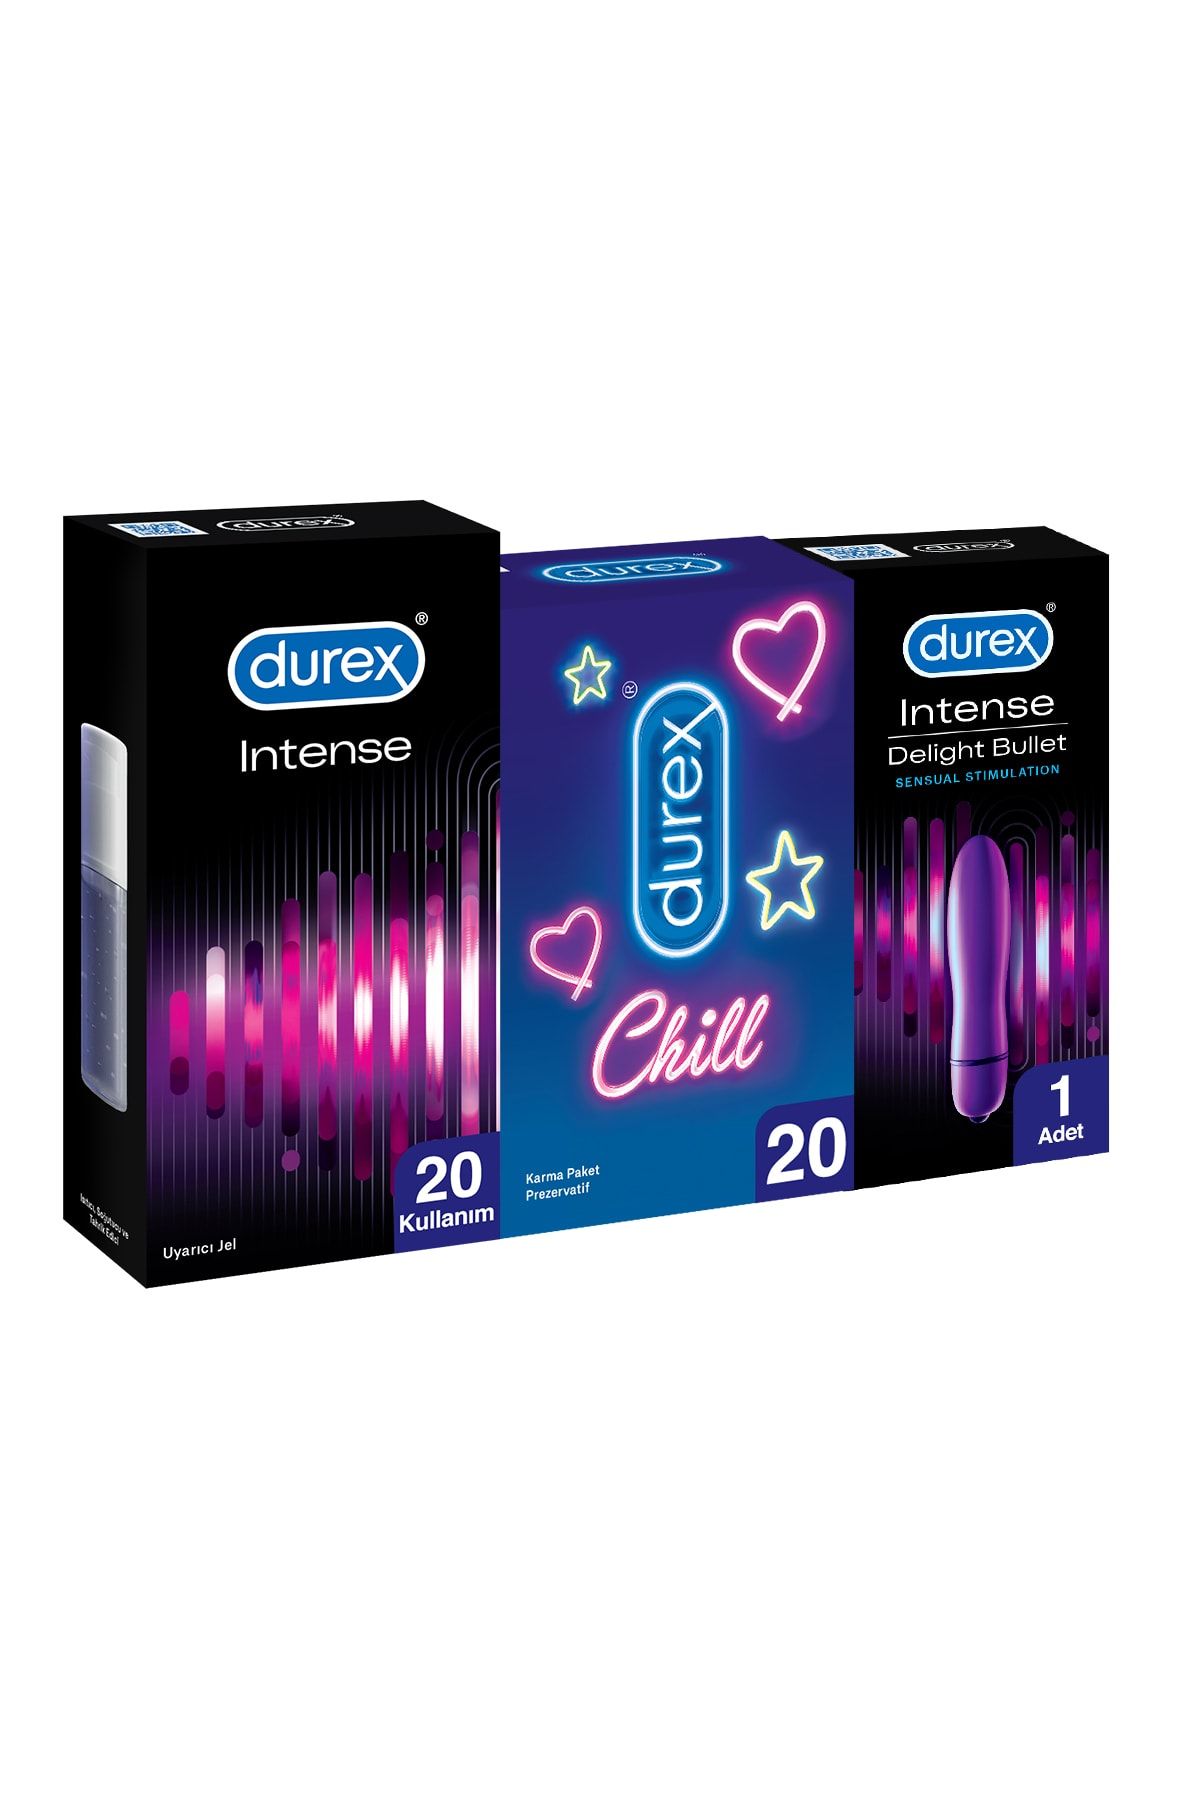 Durex Chill Prezervatif 20’li + Delight Bullet Titreşimli Vibratör +ıntense Uyarıcı Jel, 10 ml